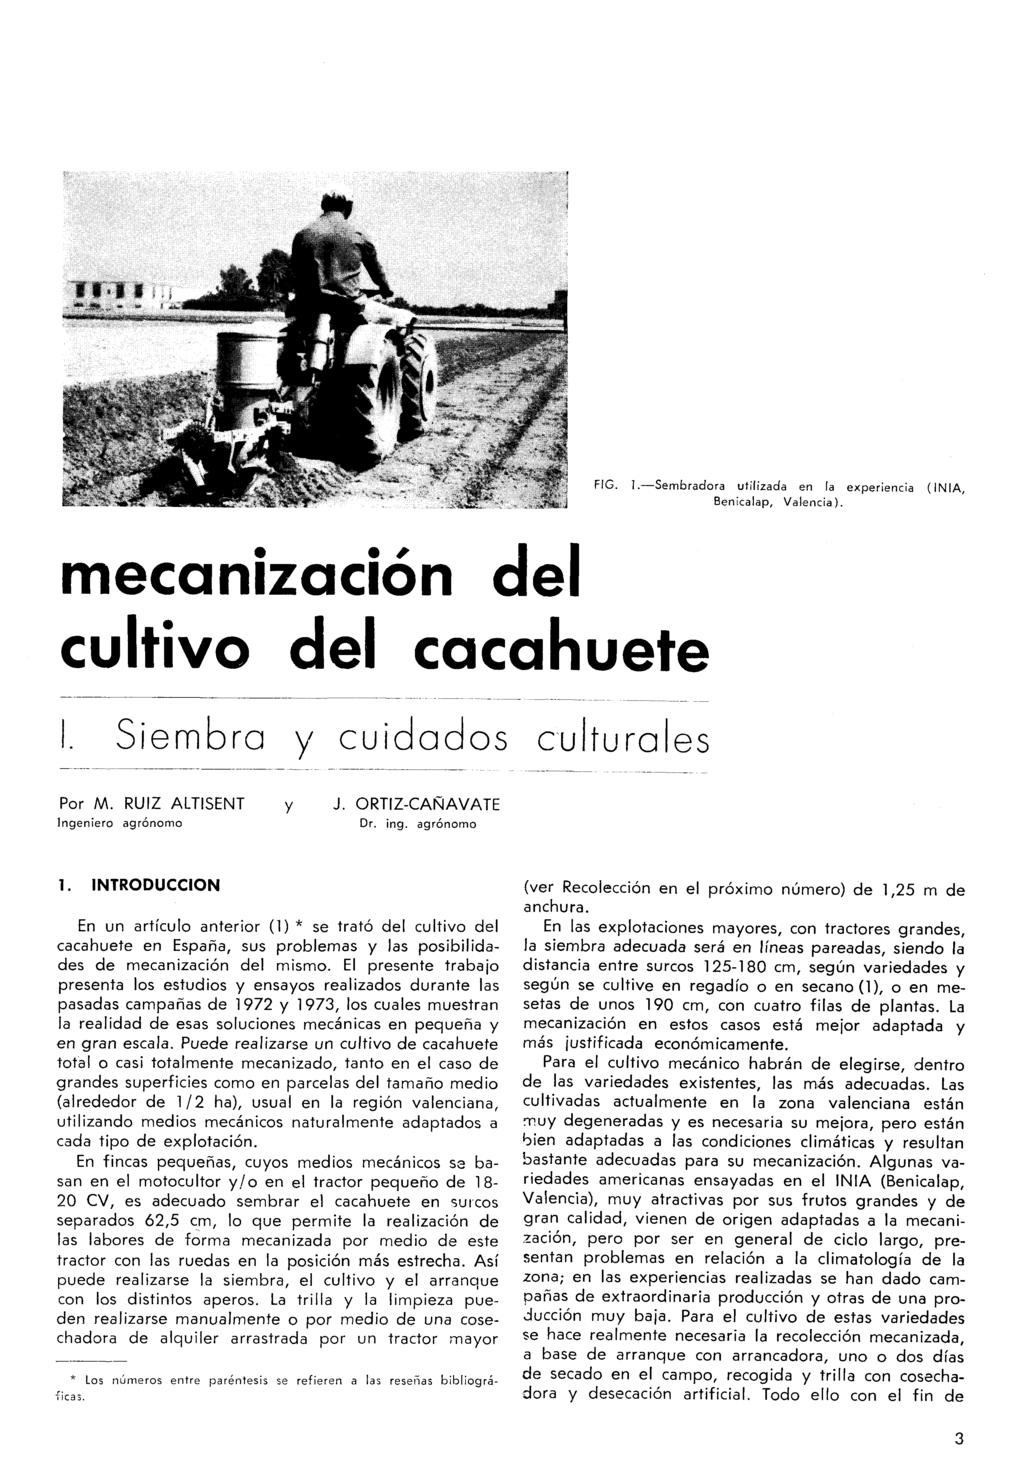 W*Ií mecanización del cultivo del cacahuete Siembra y cuidados culturales FIG. I. Sembradora utilizada en la experiencia (INIA, Benicalap, Valencia). Por M. RUIZ ALTISENT y J.